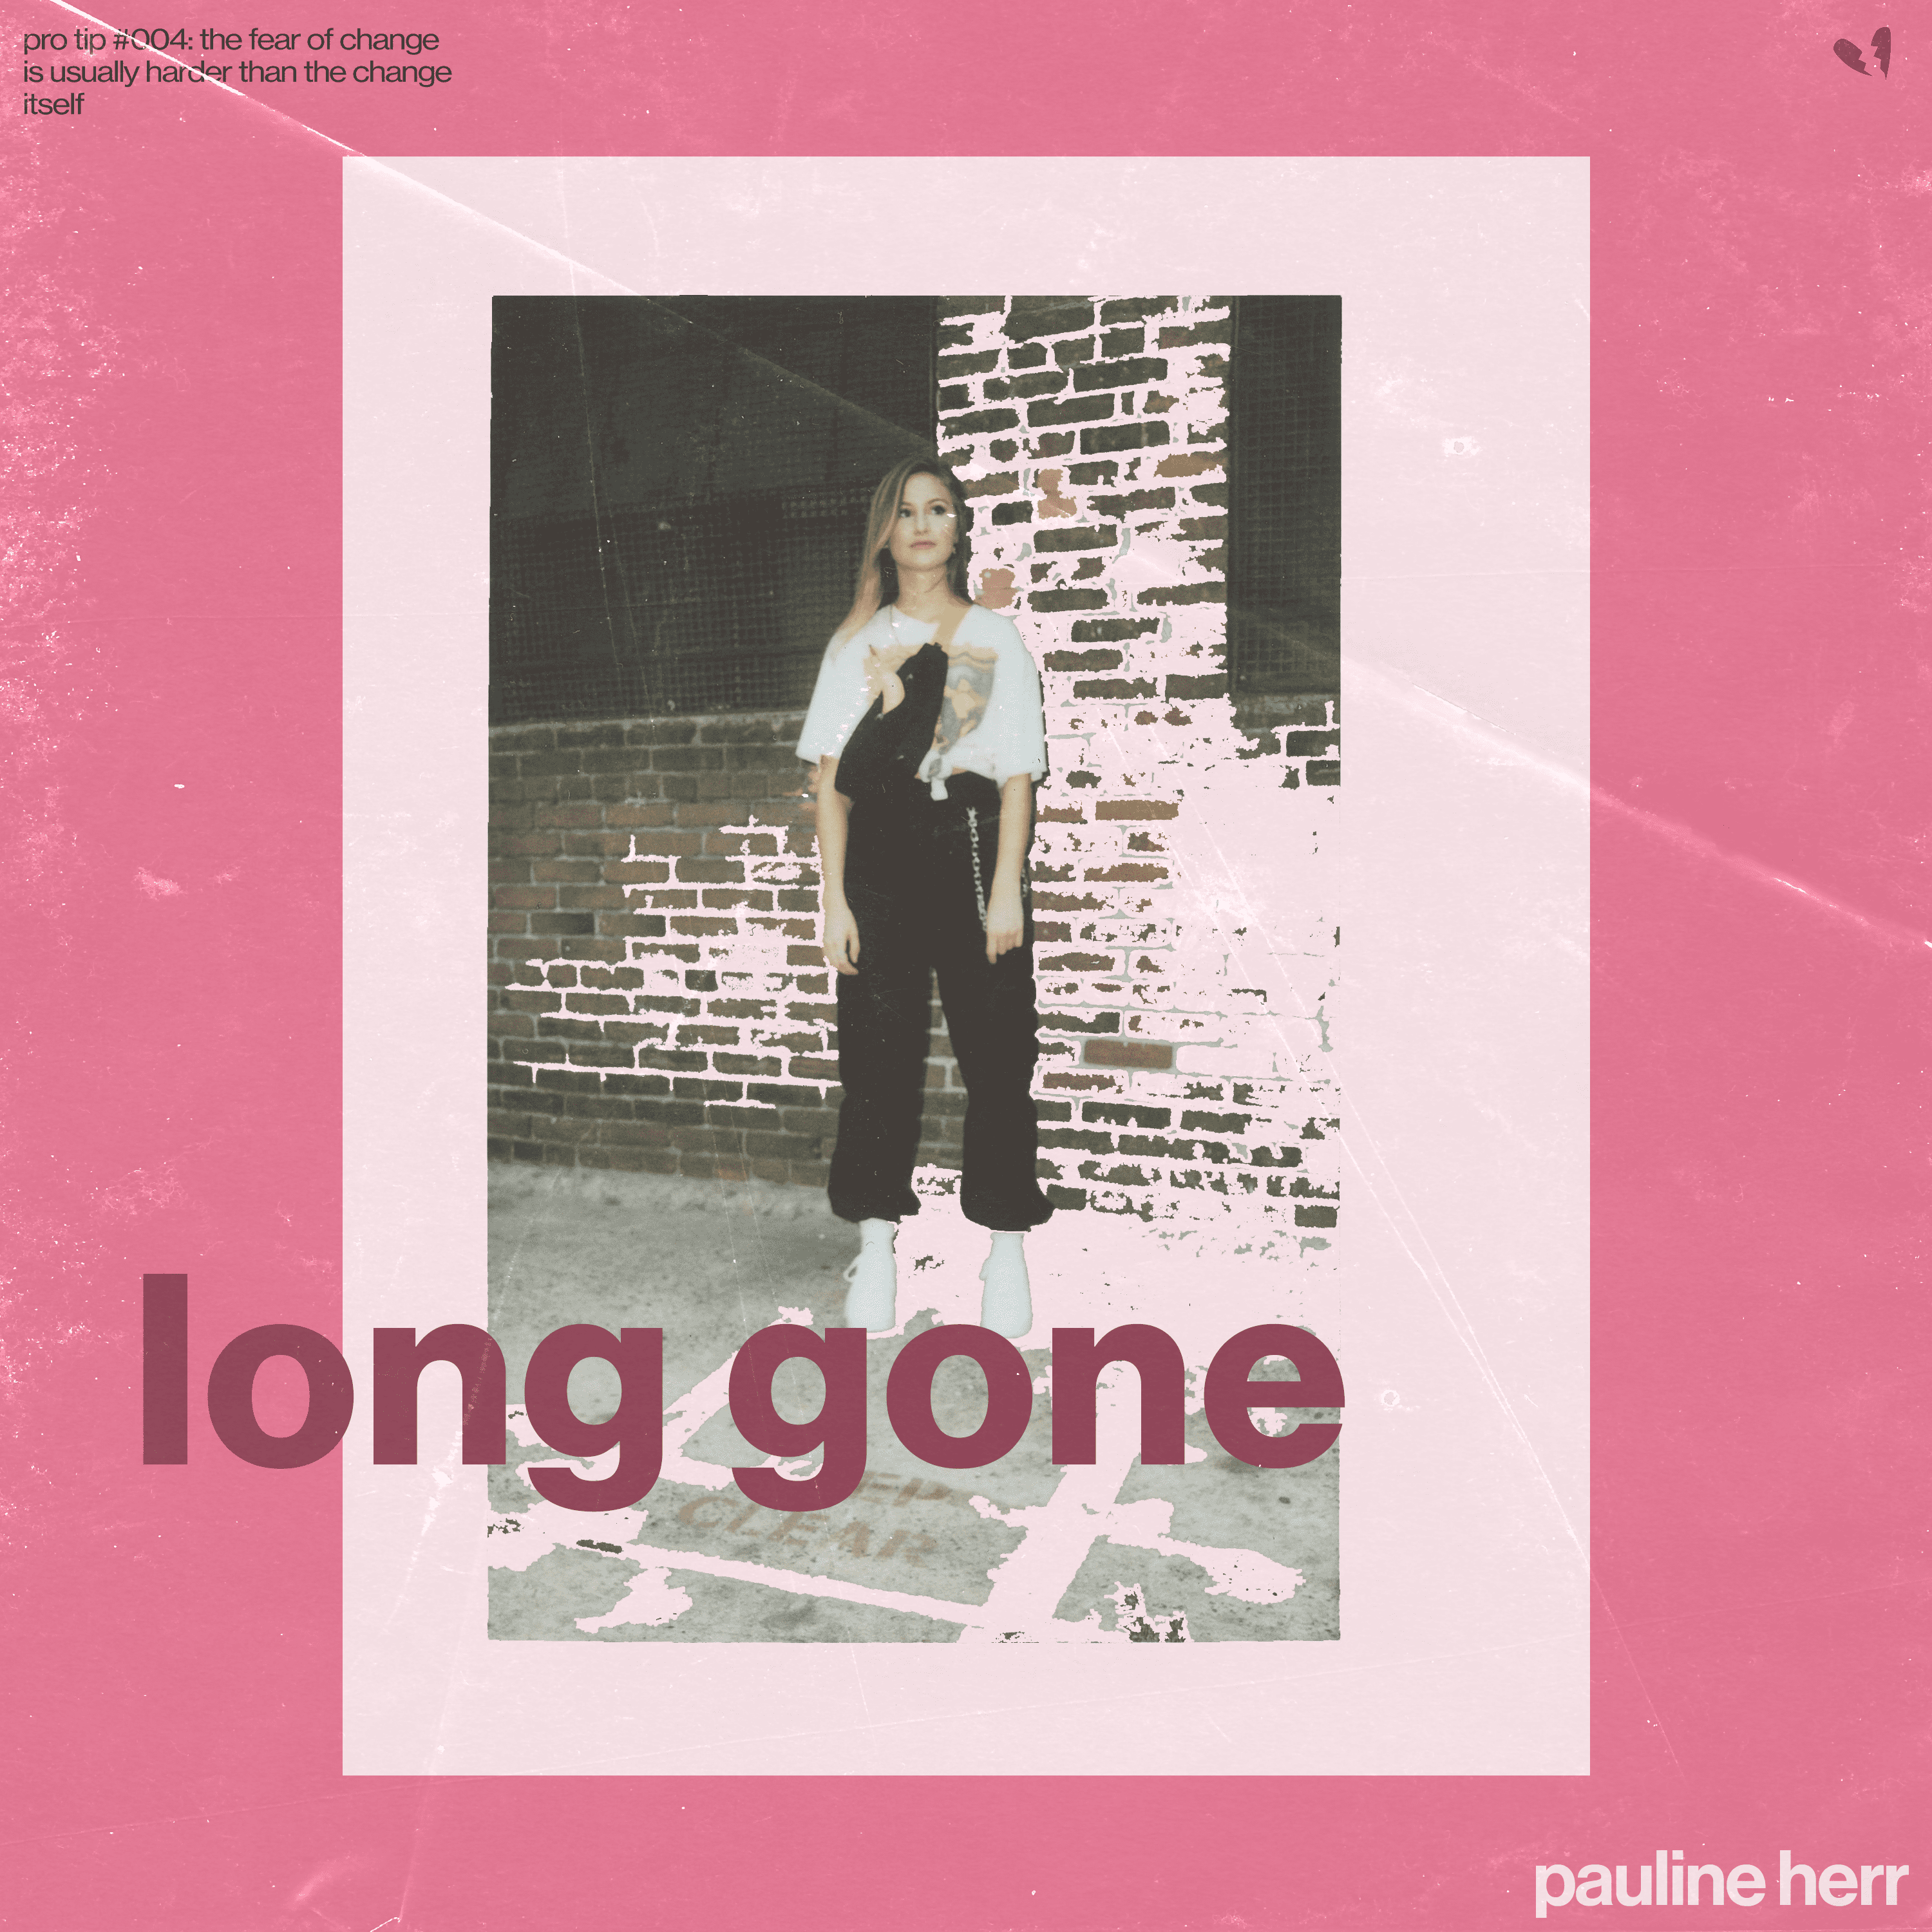 Cover art for Pauline Herr ｡･:*:･ﾟ☆'s song: Long Gone